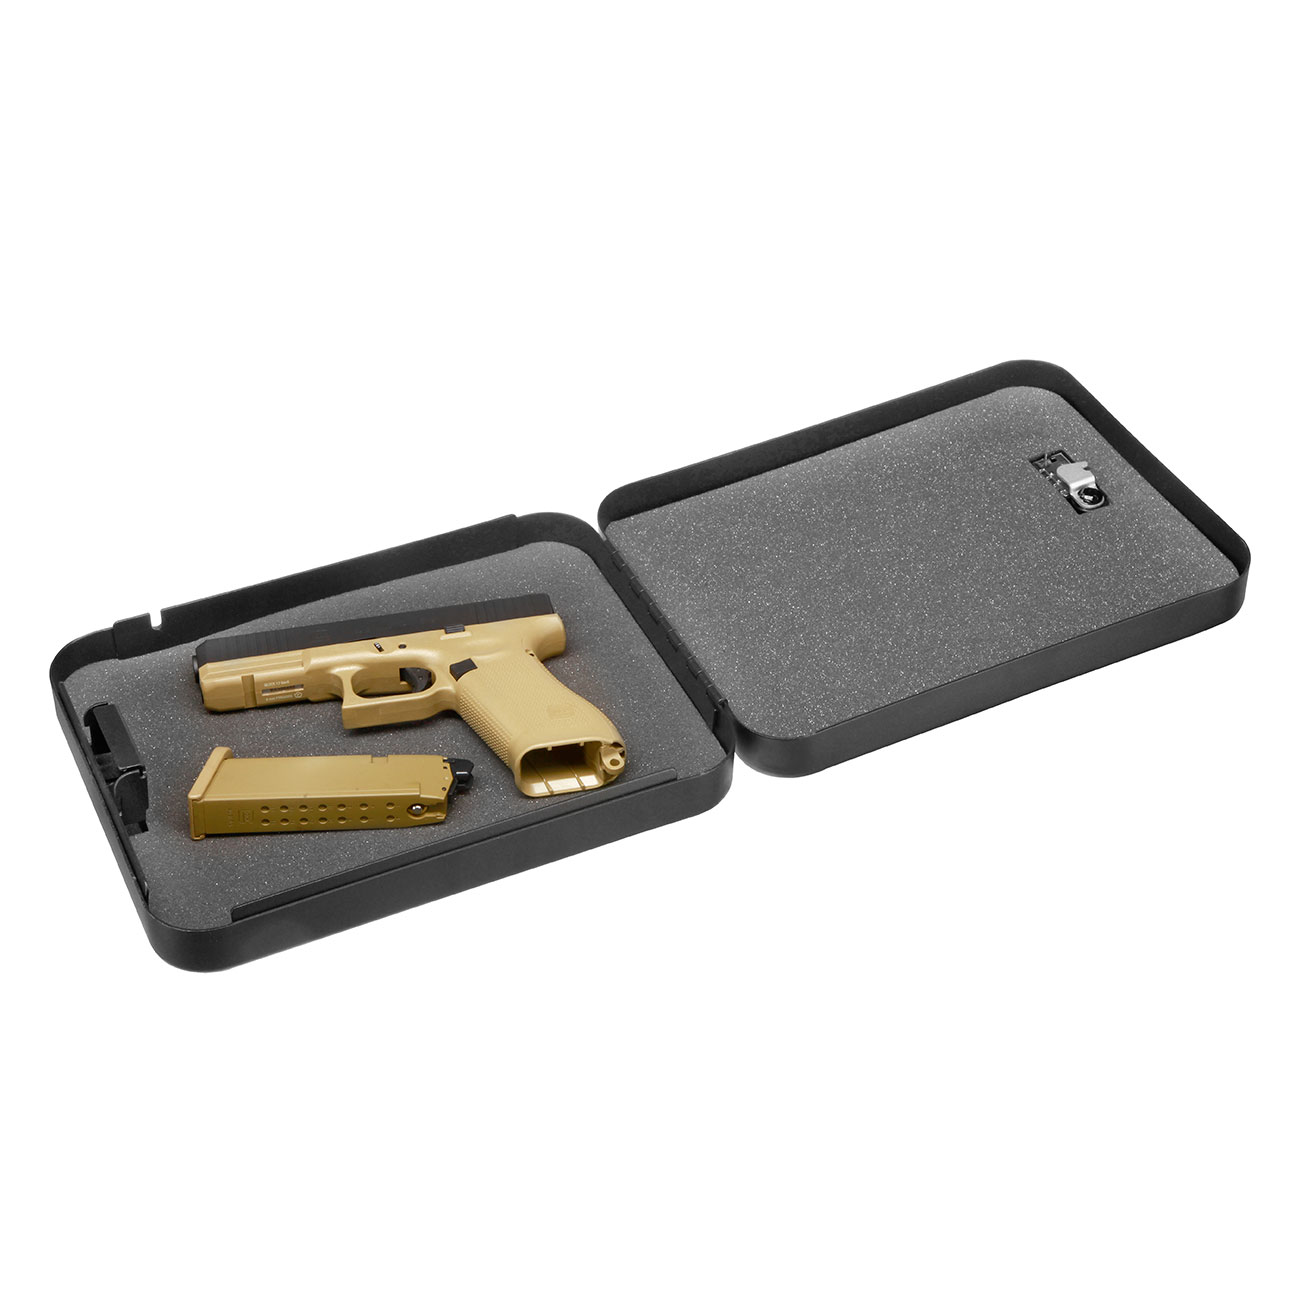 Umarex Waffentresor Handgun Safe mit Zahlenschloss und Stahlseil 300 x 200 mm schwarz Bild 5